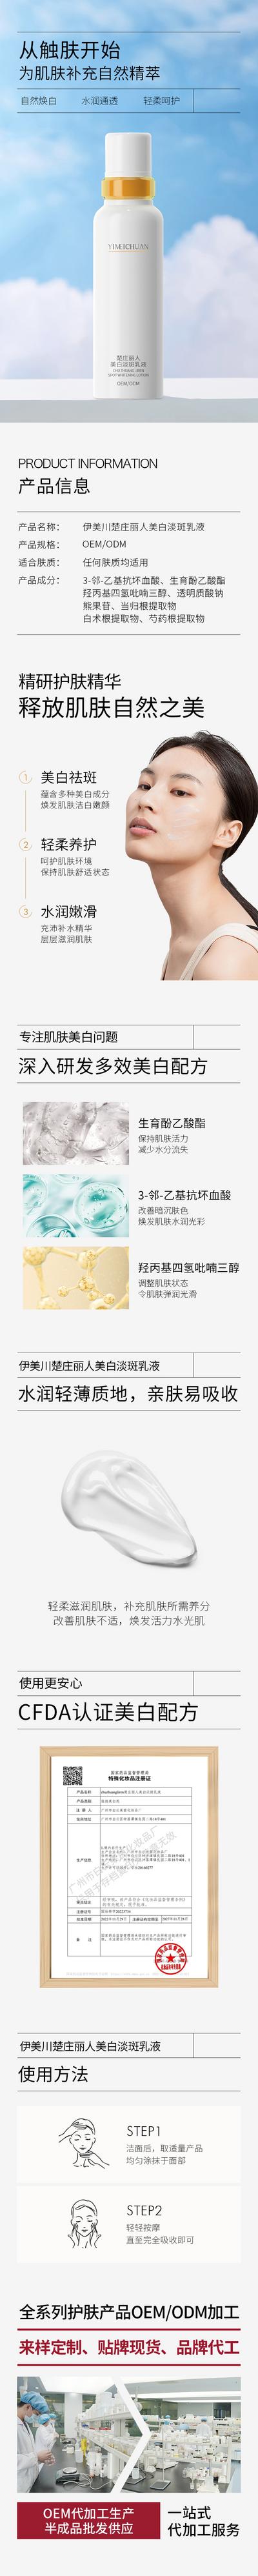 南门网 广告 海报 电商 美白 化妆品 保养品 详情页